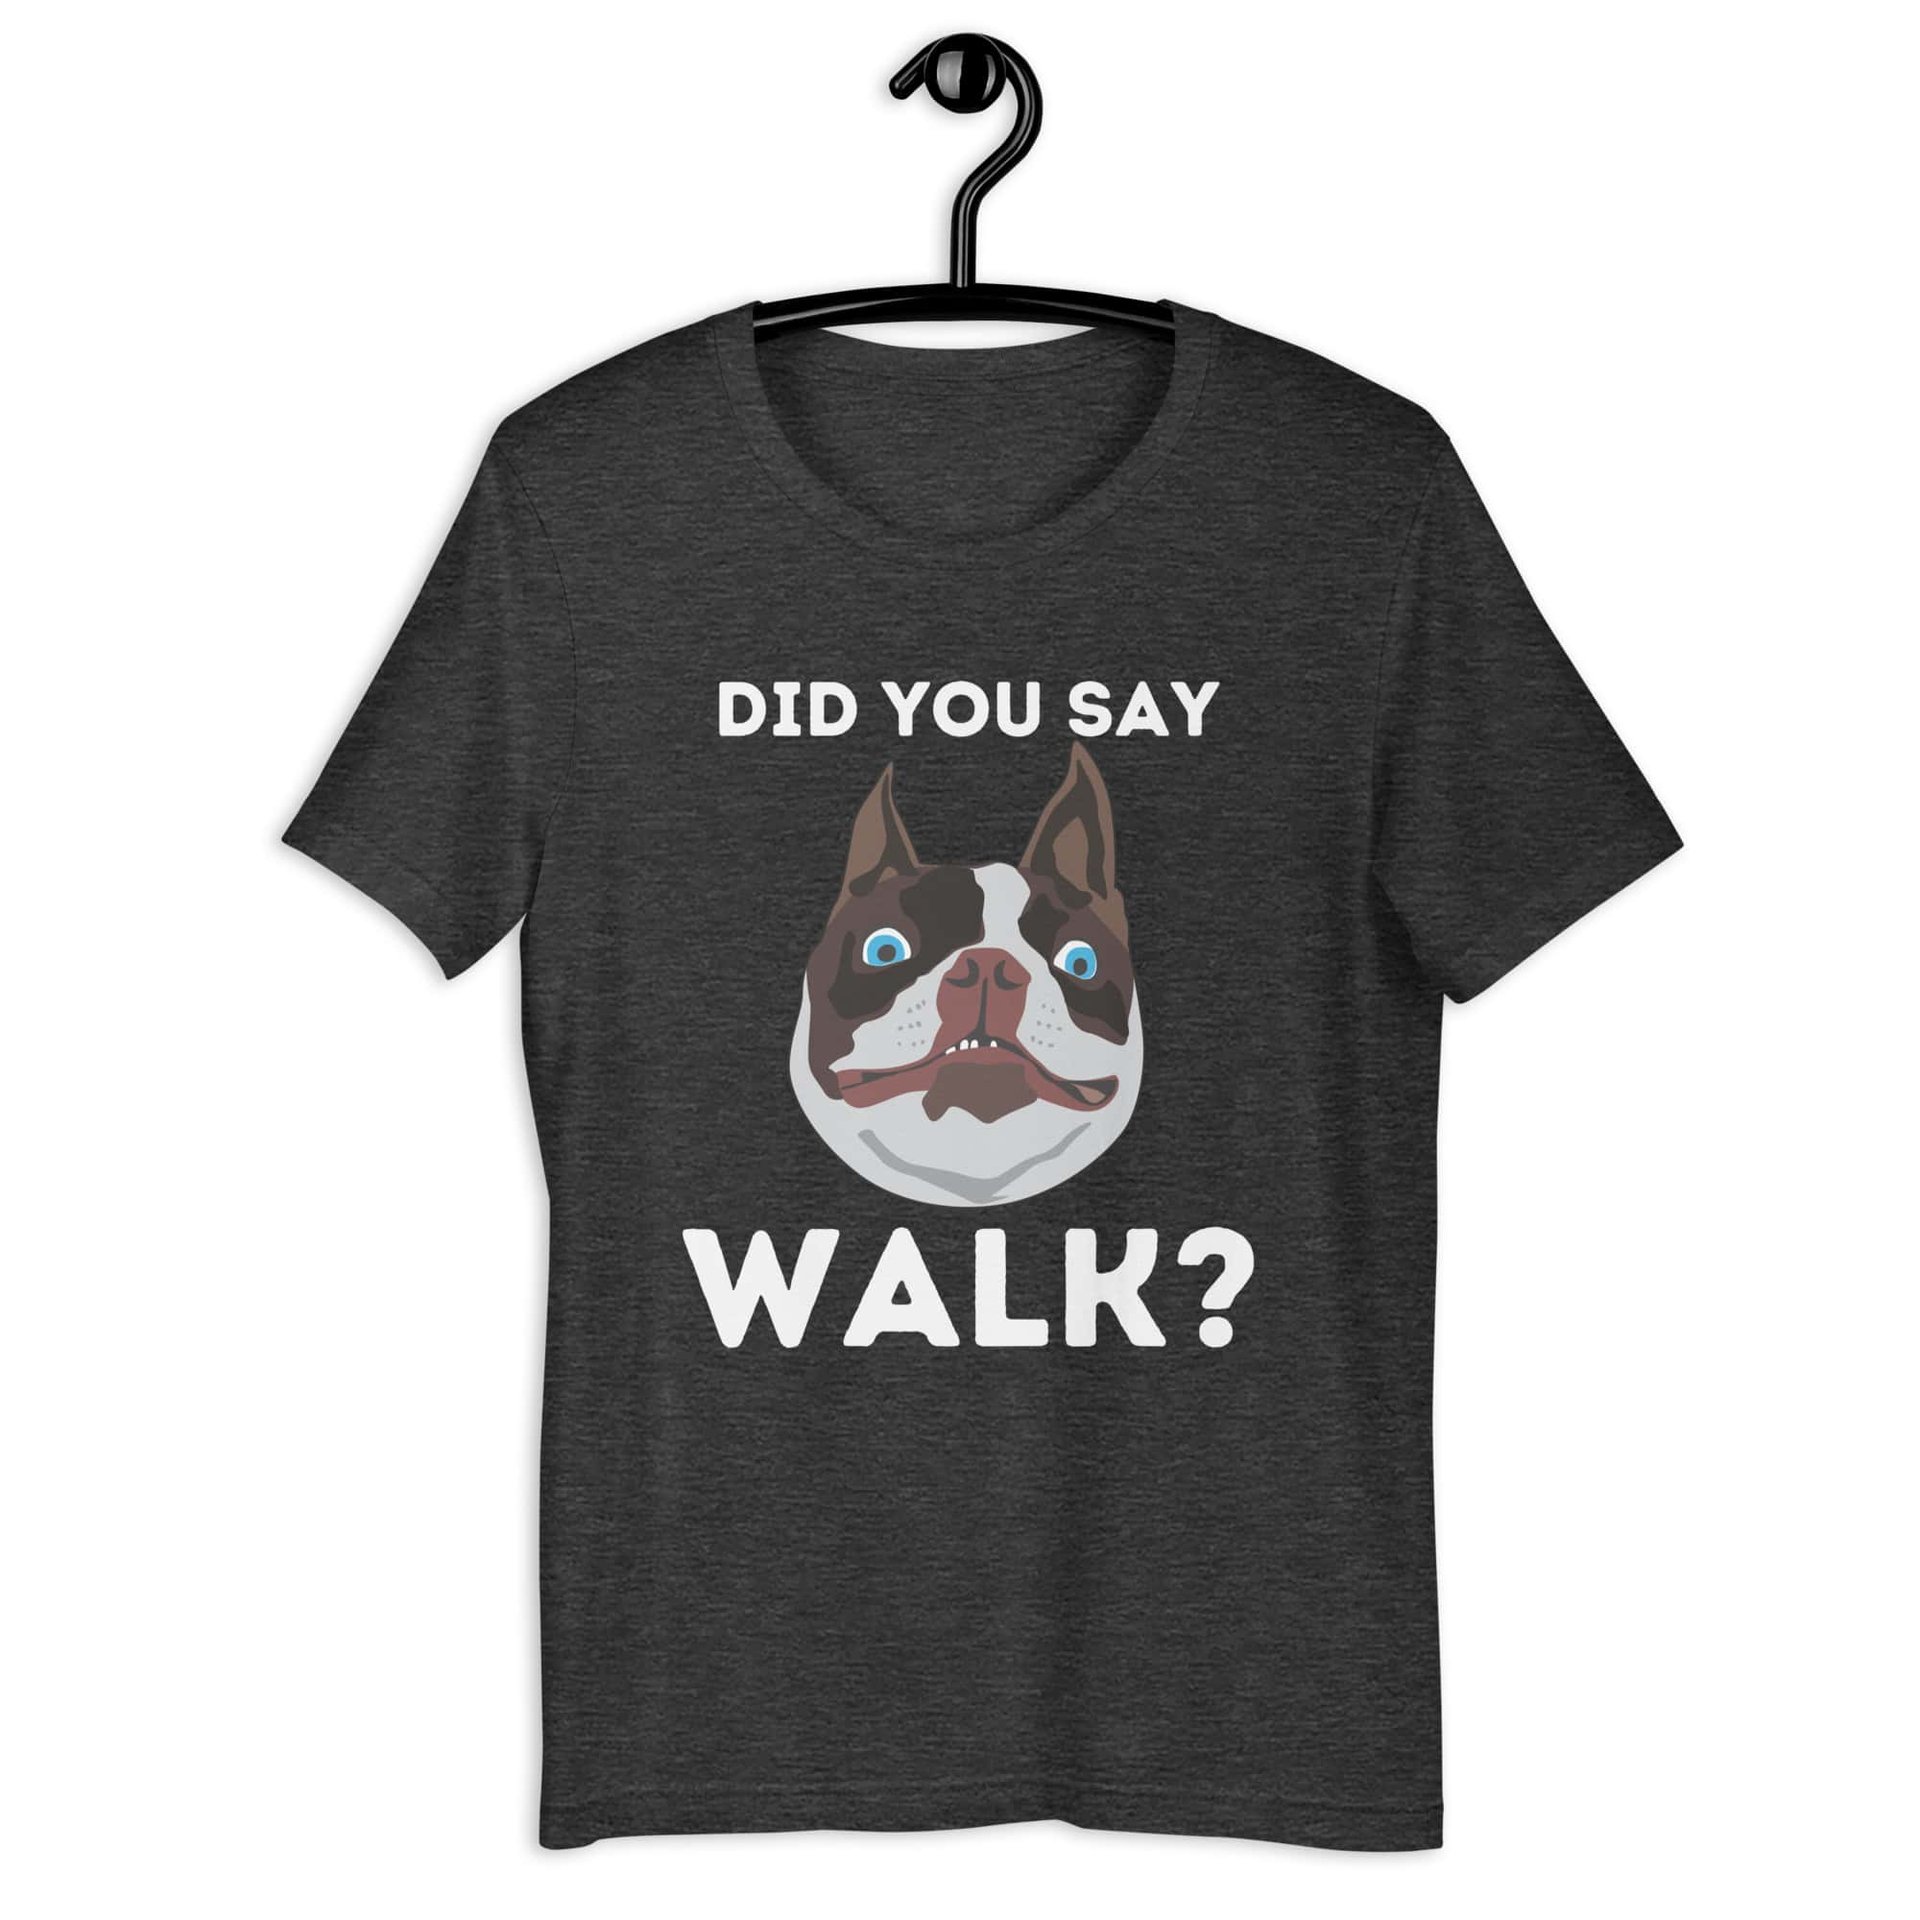 "Did You Say Walk?" Funny Dog Unisex T-Shirt. Dark grey